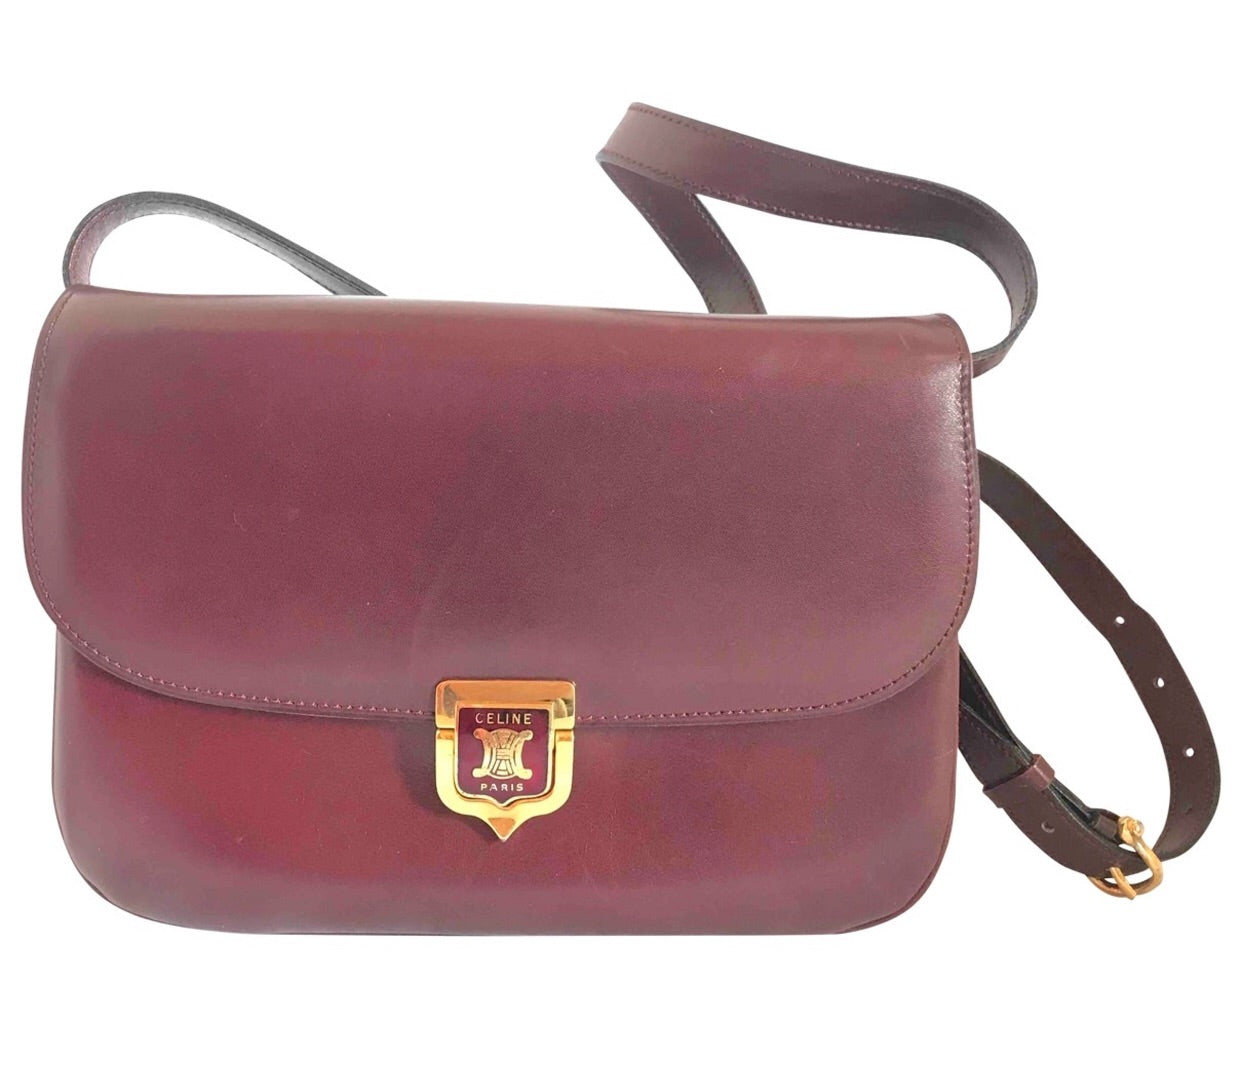 CELINE Classic Box Leather Shoulder Bag in Bordeaux